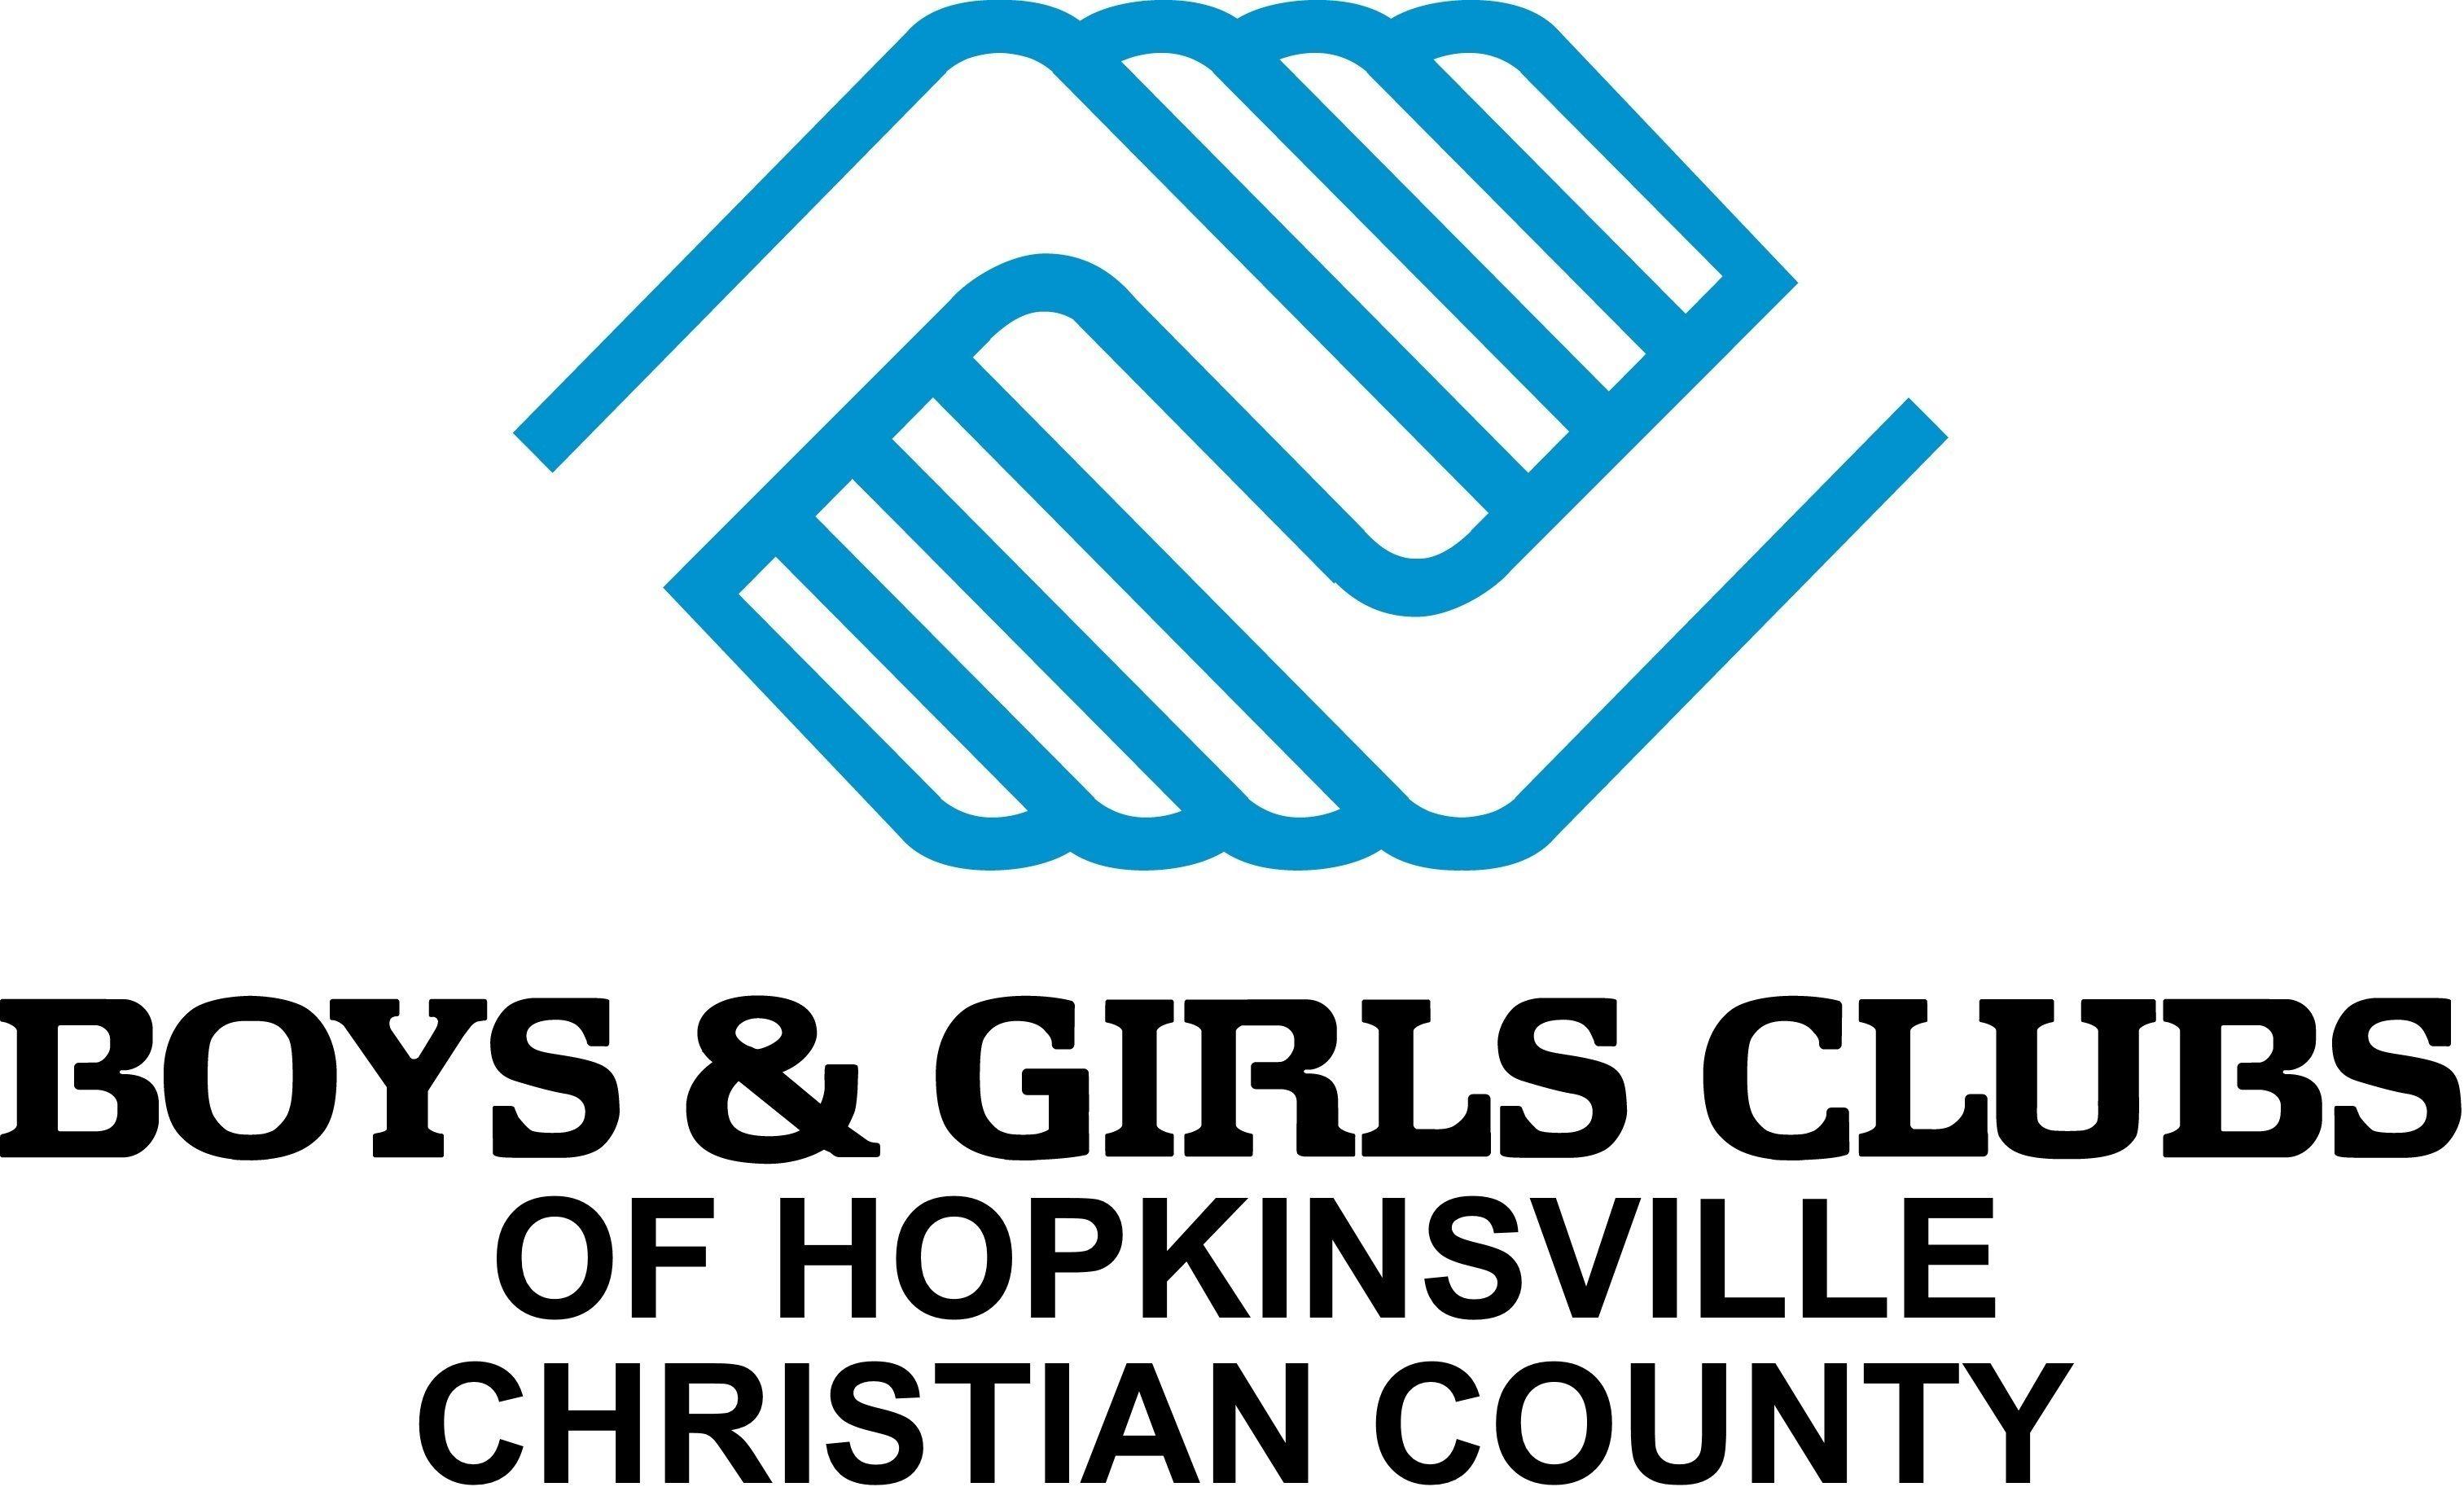 Girls Club Logo - Boys & Girls Club Logo Americas Corporation